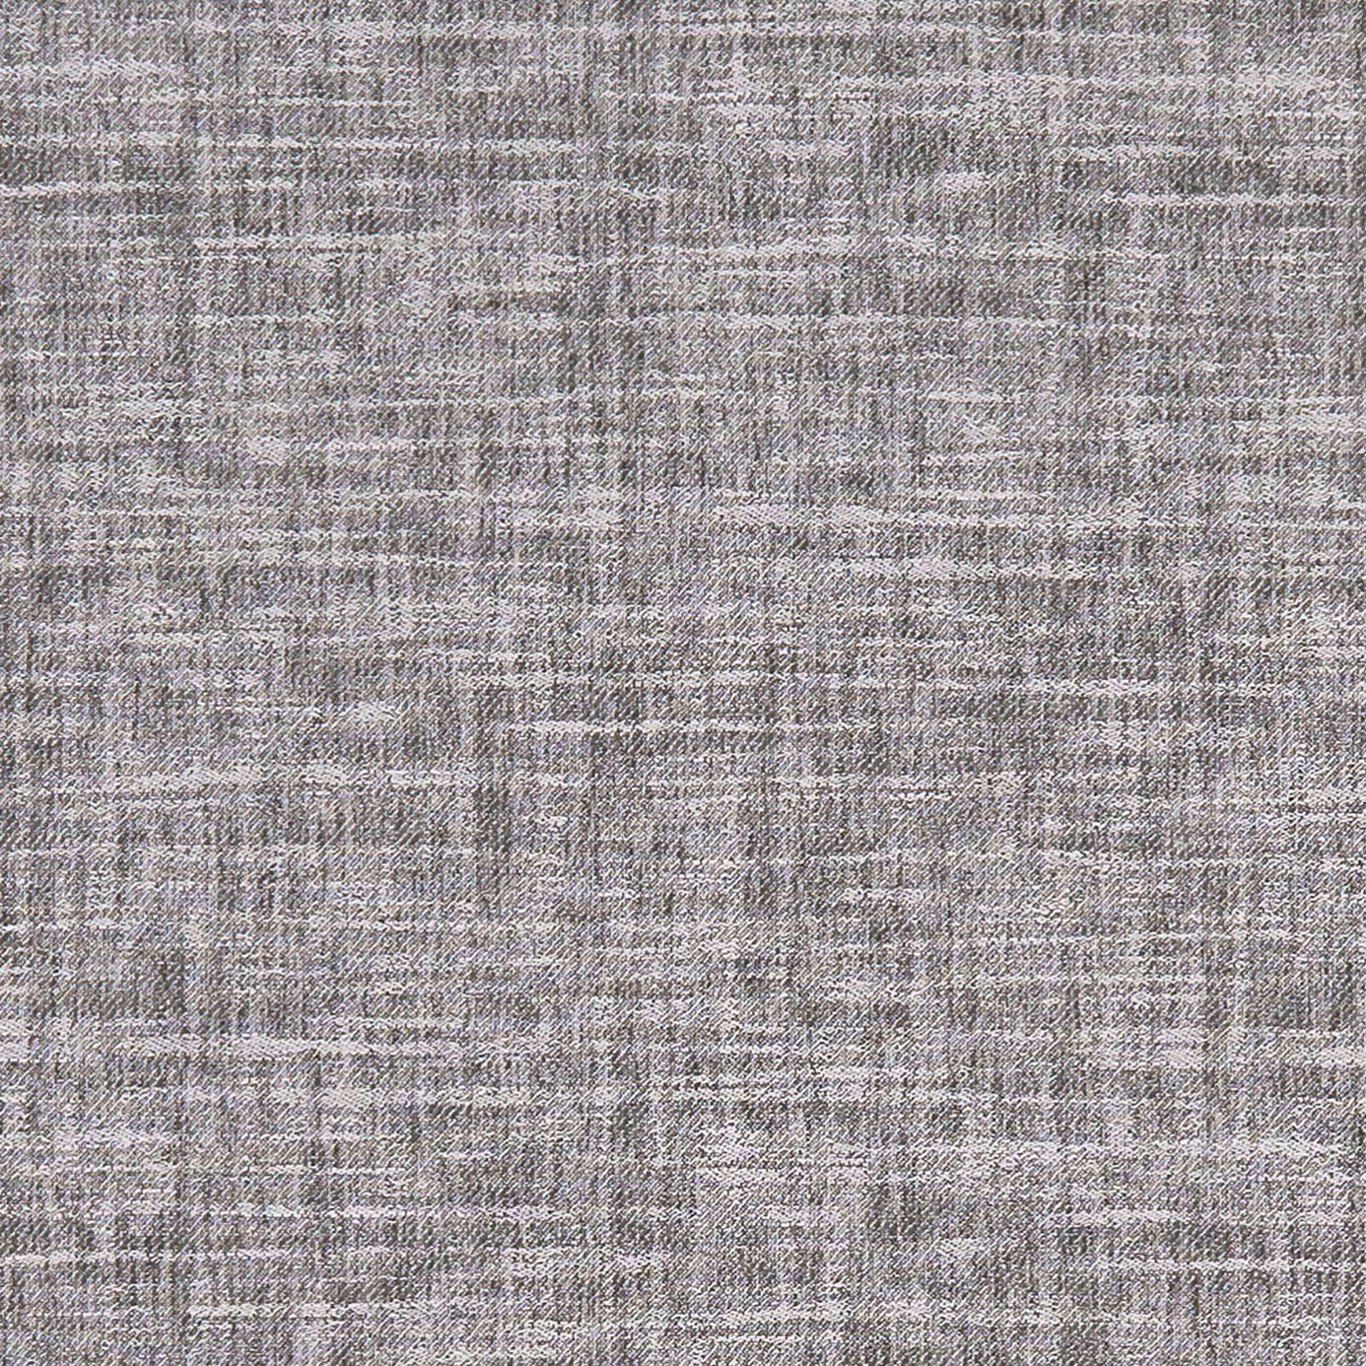 Mizo Charcoal Fabric by CNC